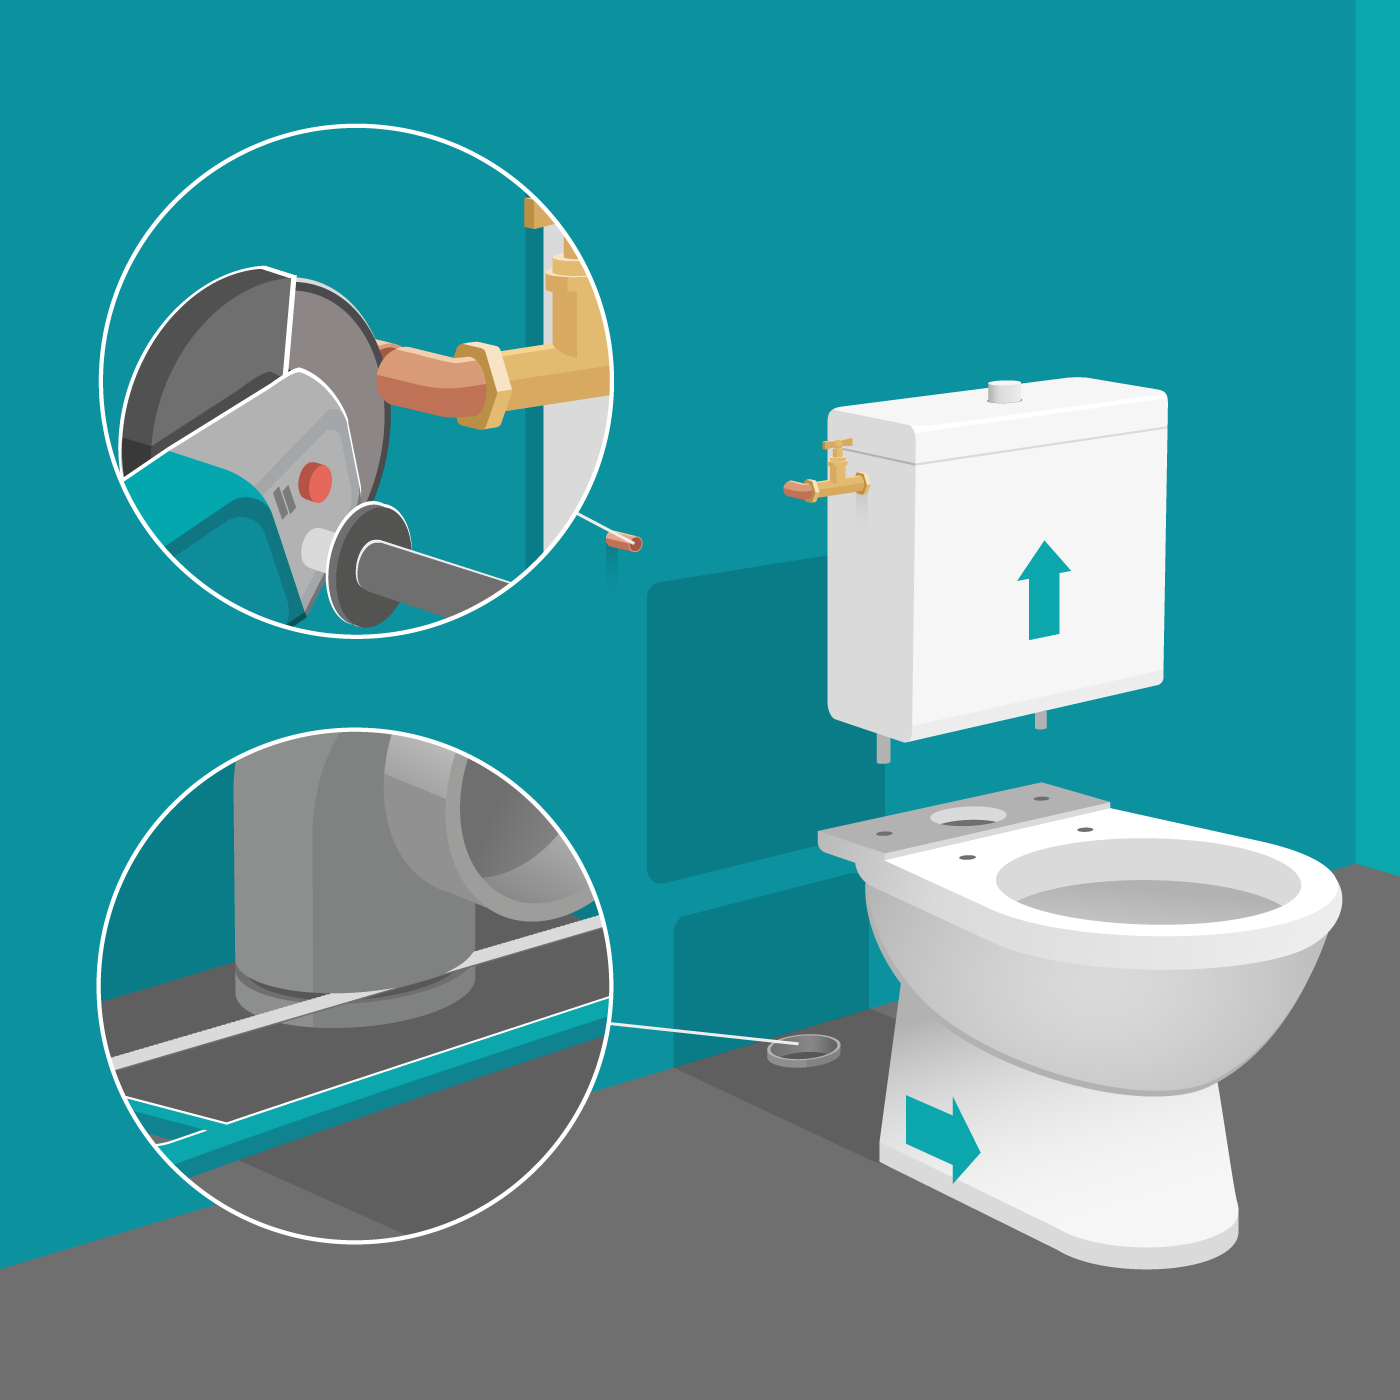 Remplacement du mécanisme de chasse d'eau de vos toilettes (WC suspendu)